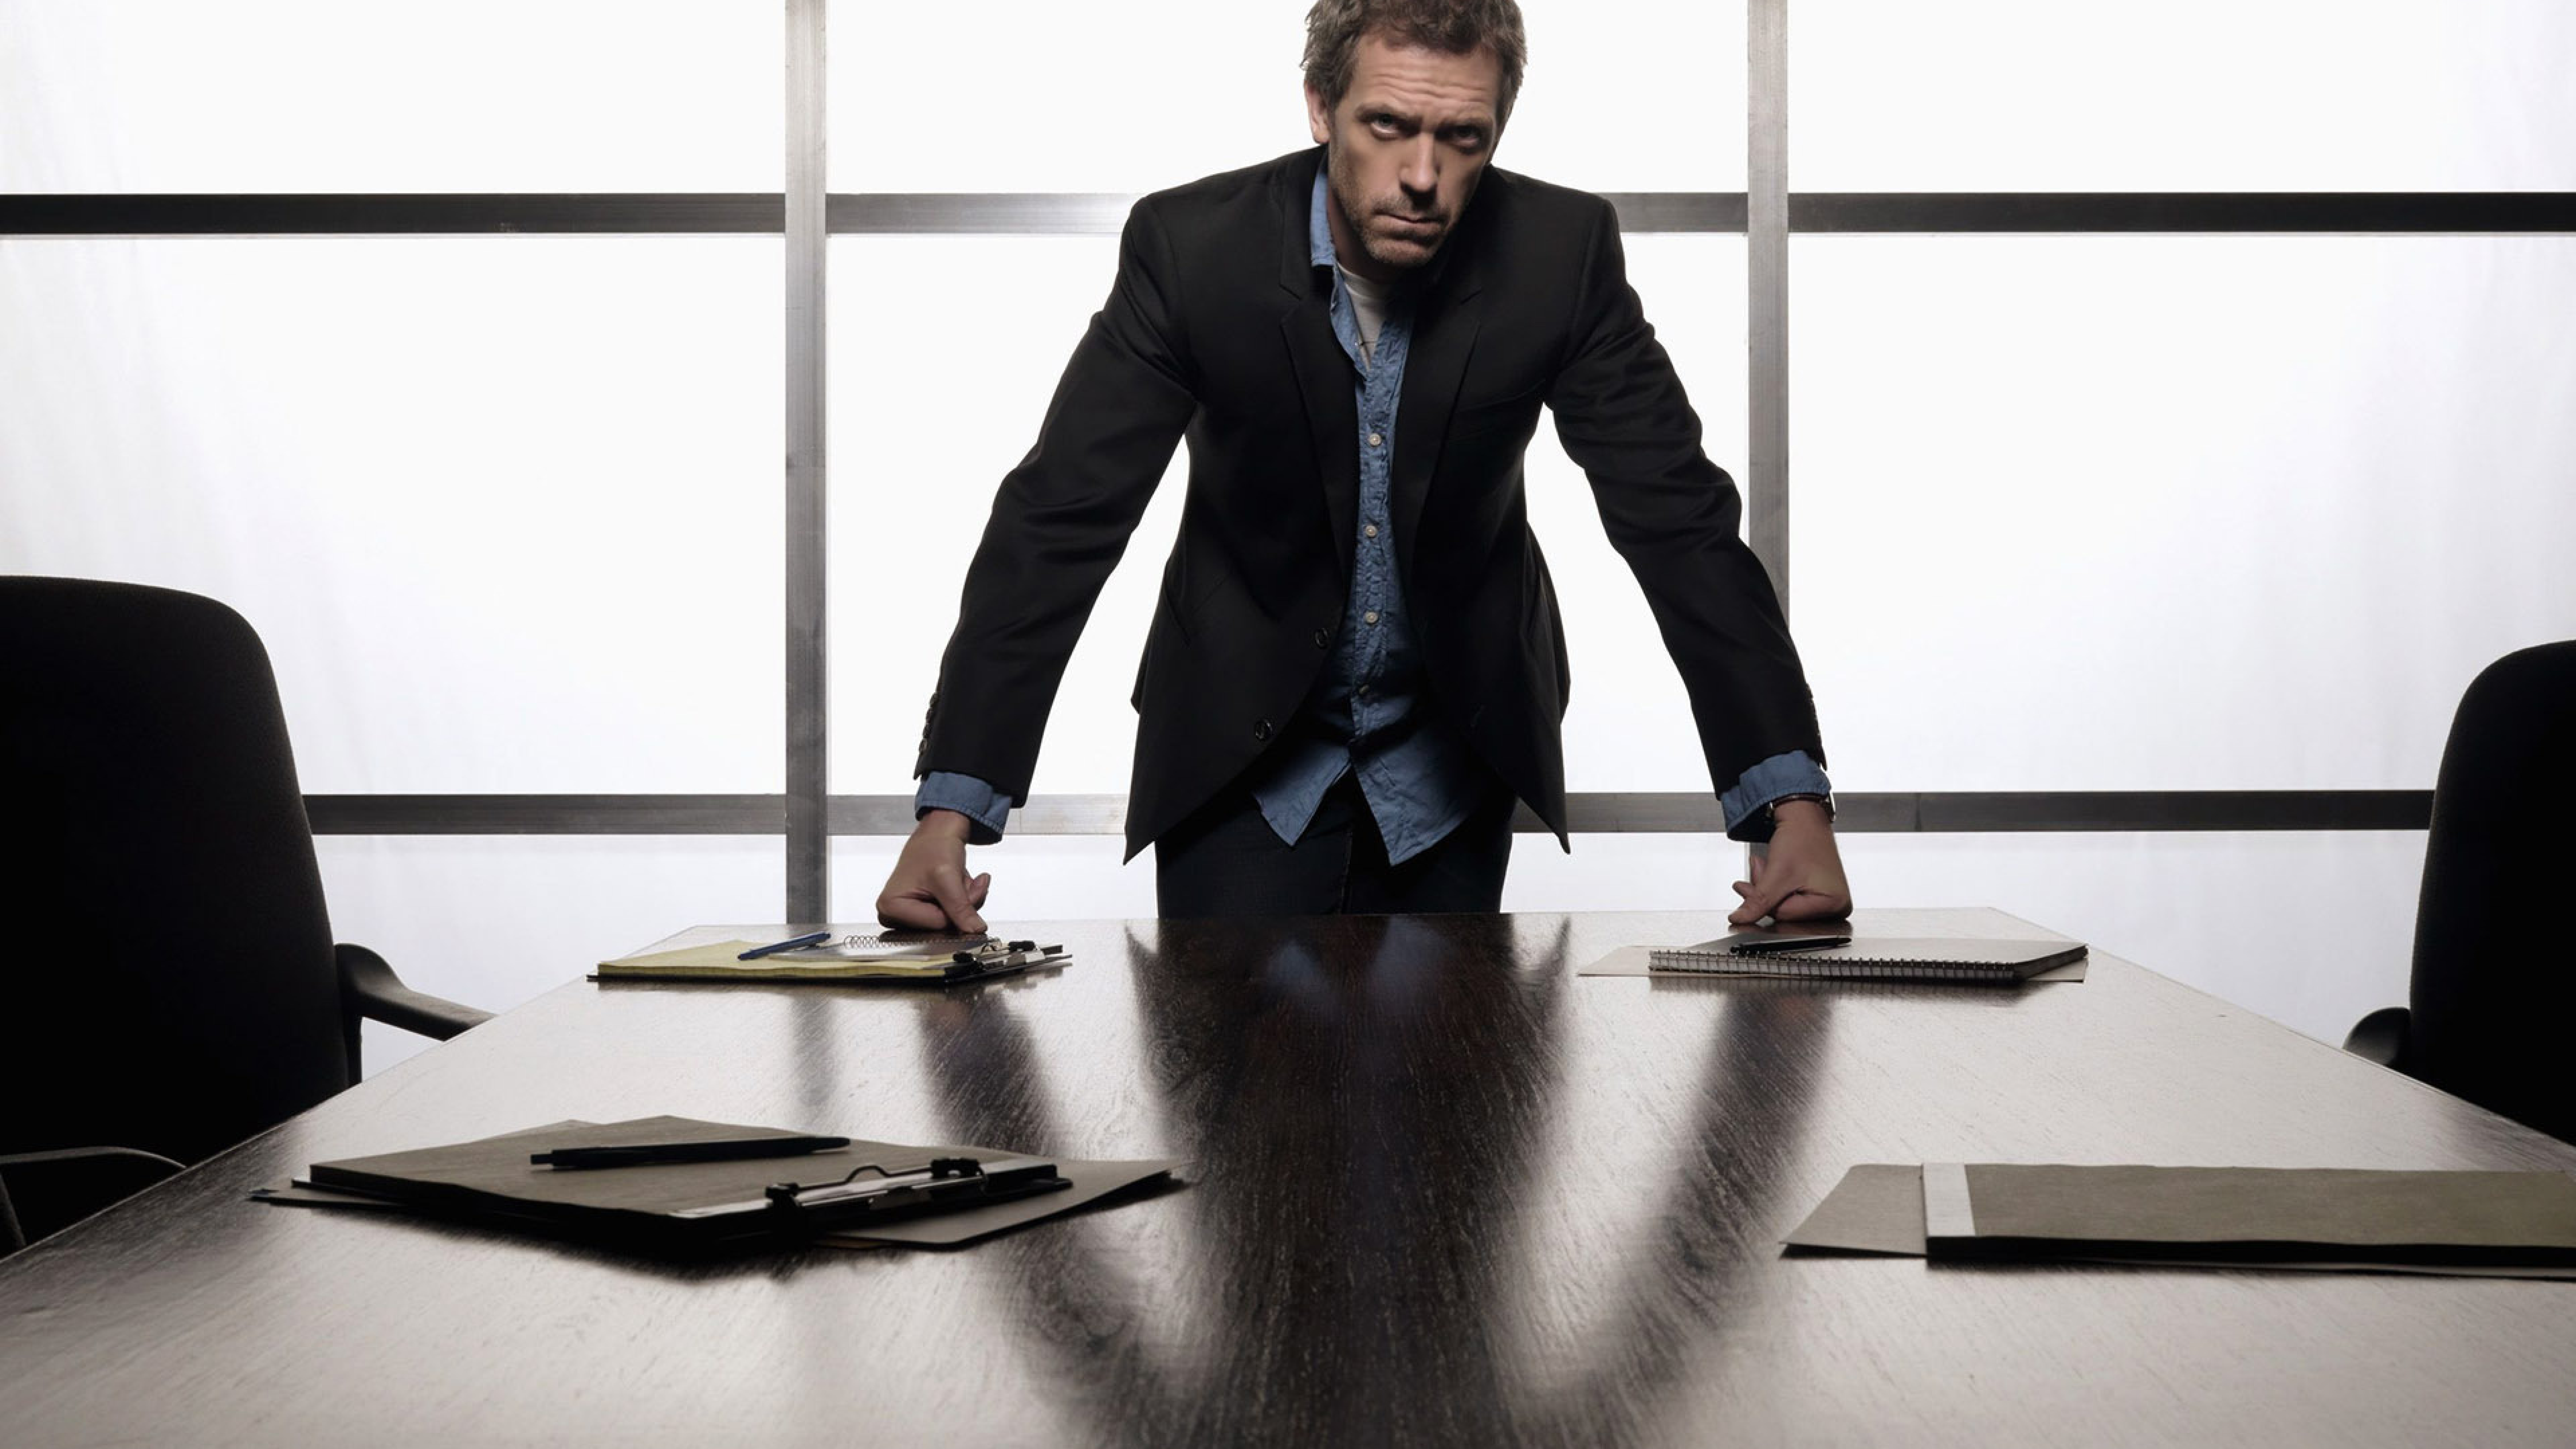 Картинка на рабочий стол на работе. Человек опирается на стол. Бизнесмен за столом. Мужчина в костюме в офисе. Властный человек.